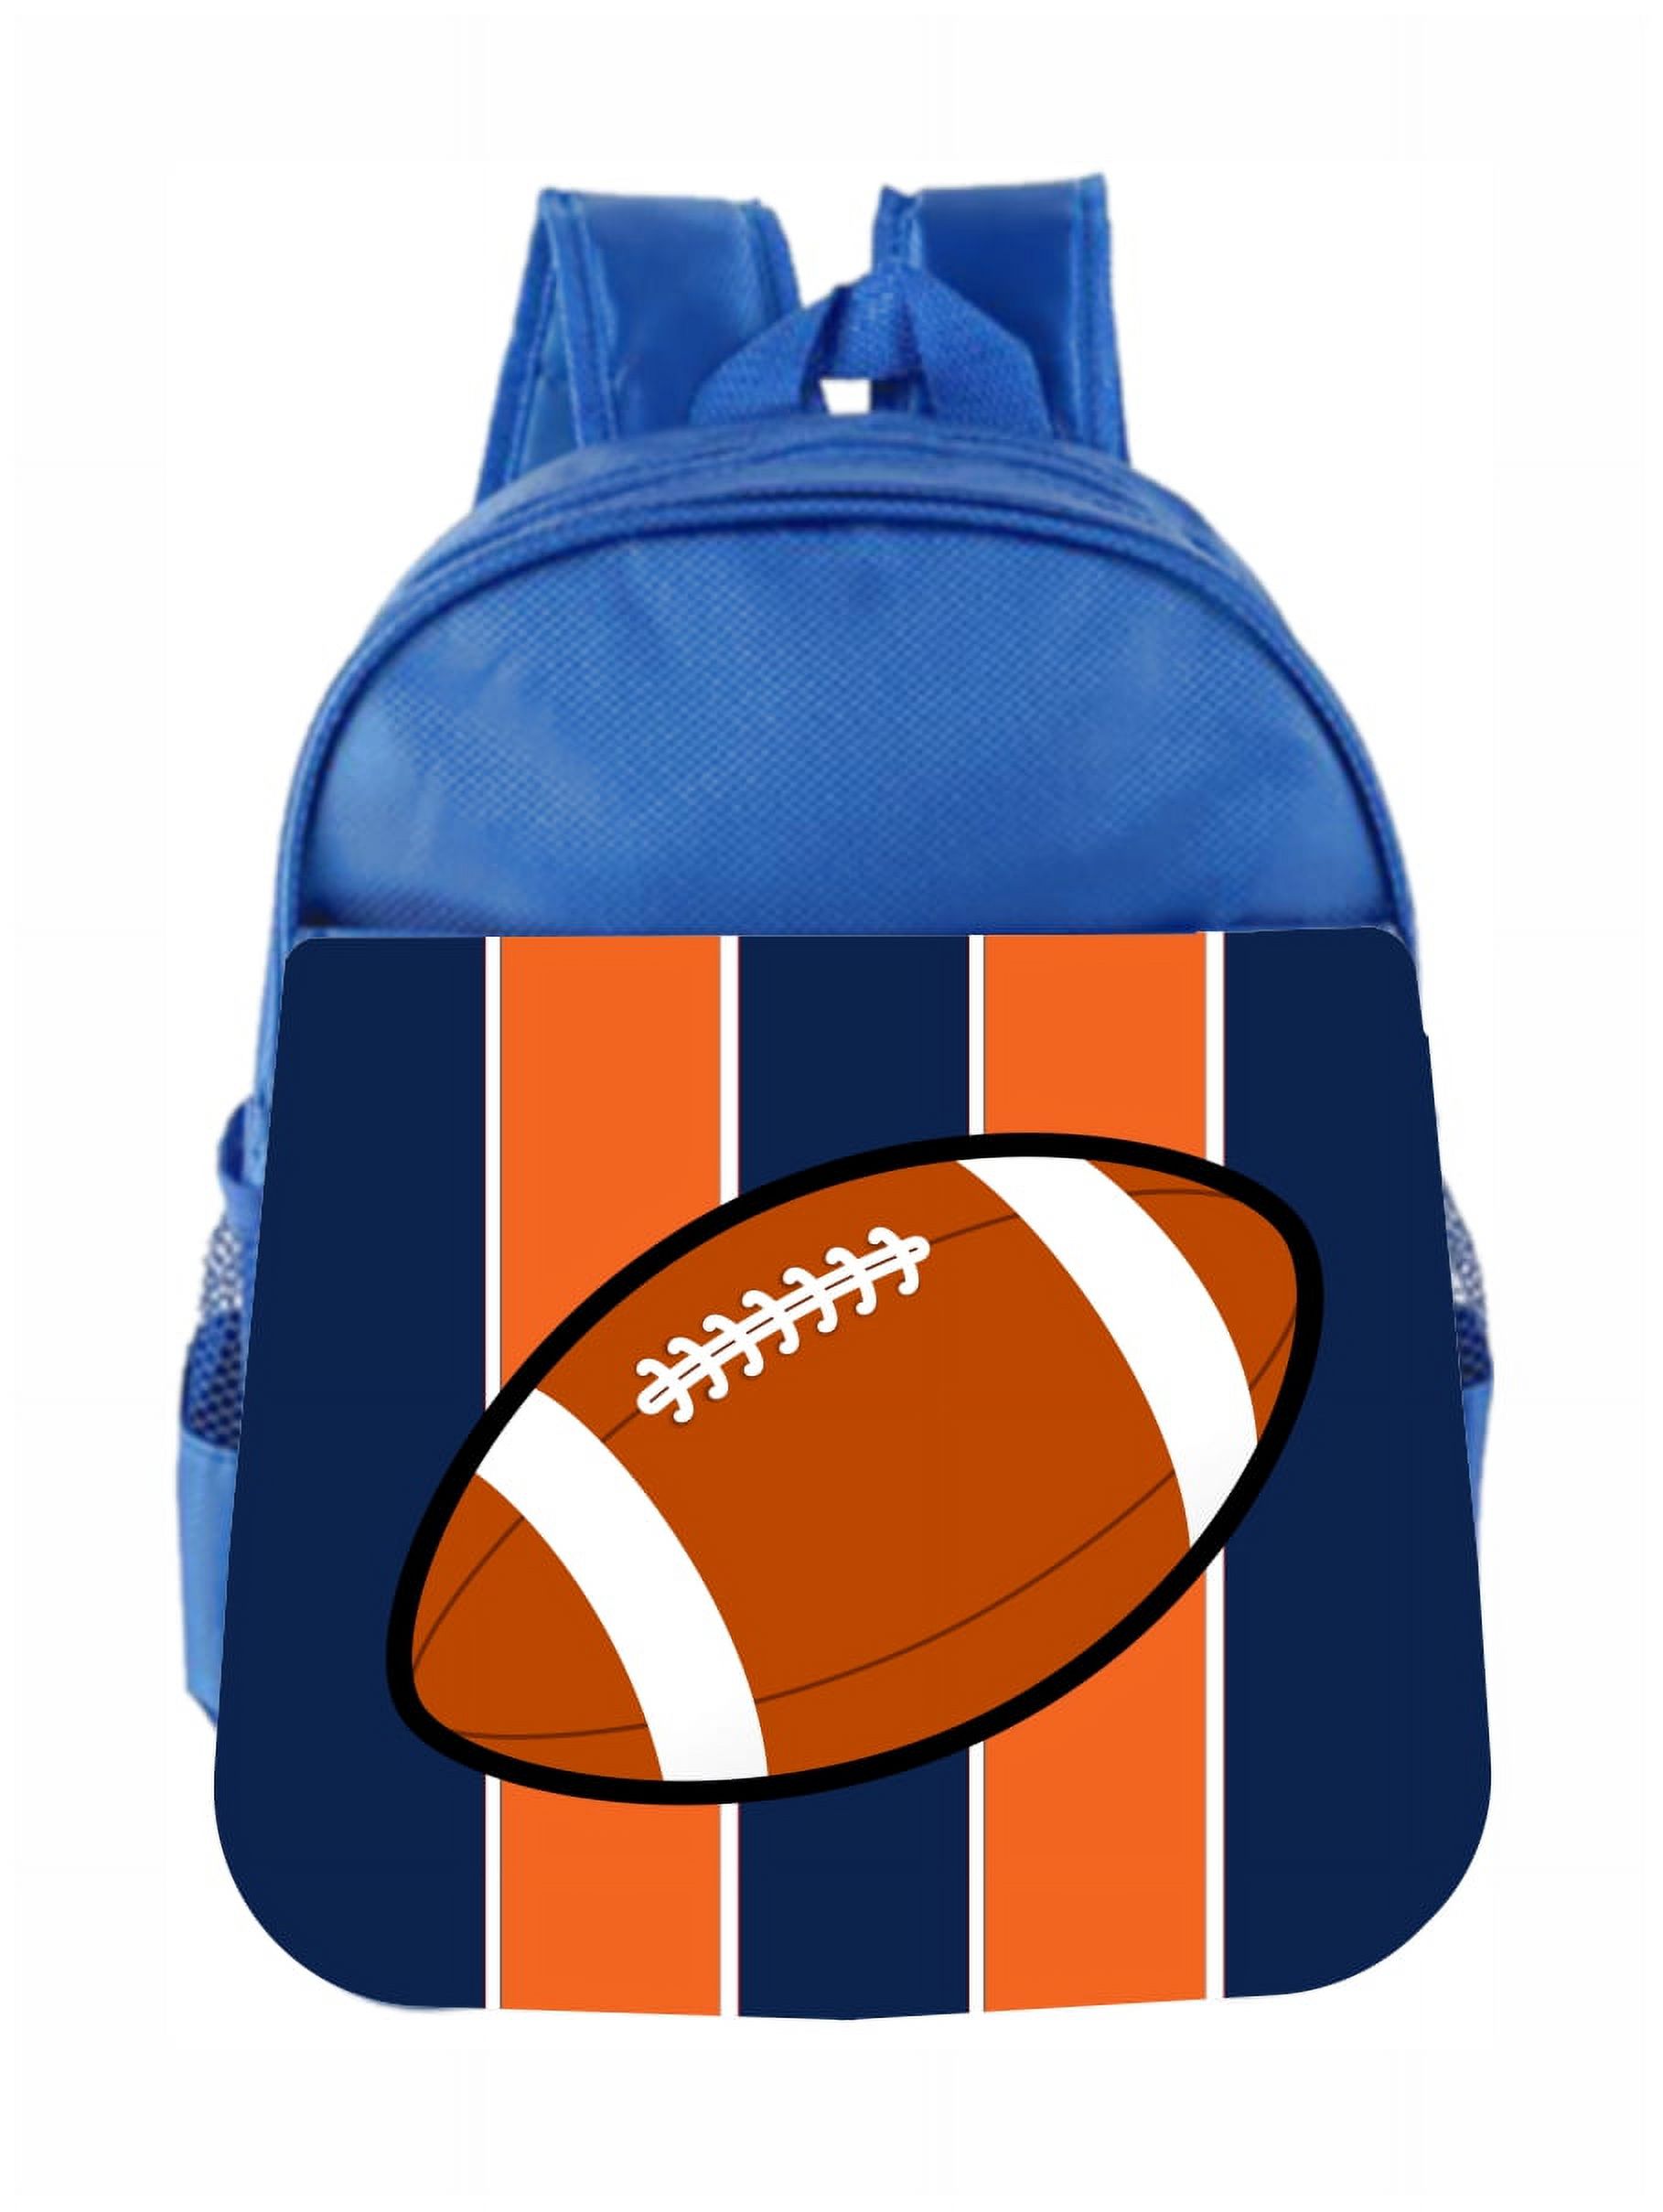 Toddler Backpack Sports Football Orange Blue Stripes Kids Backpack Toddler - image 1 of 4